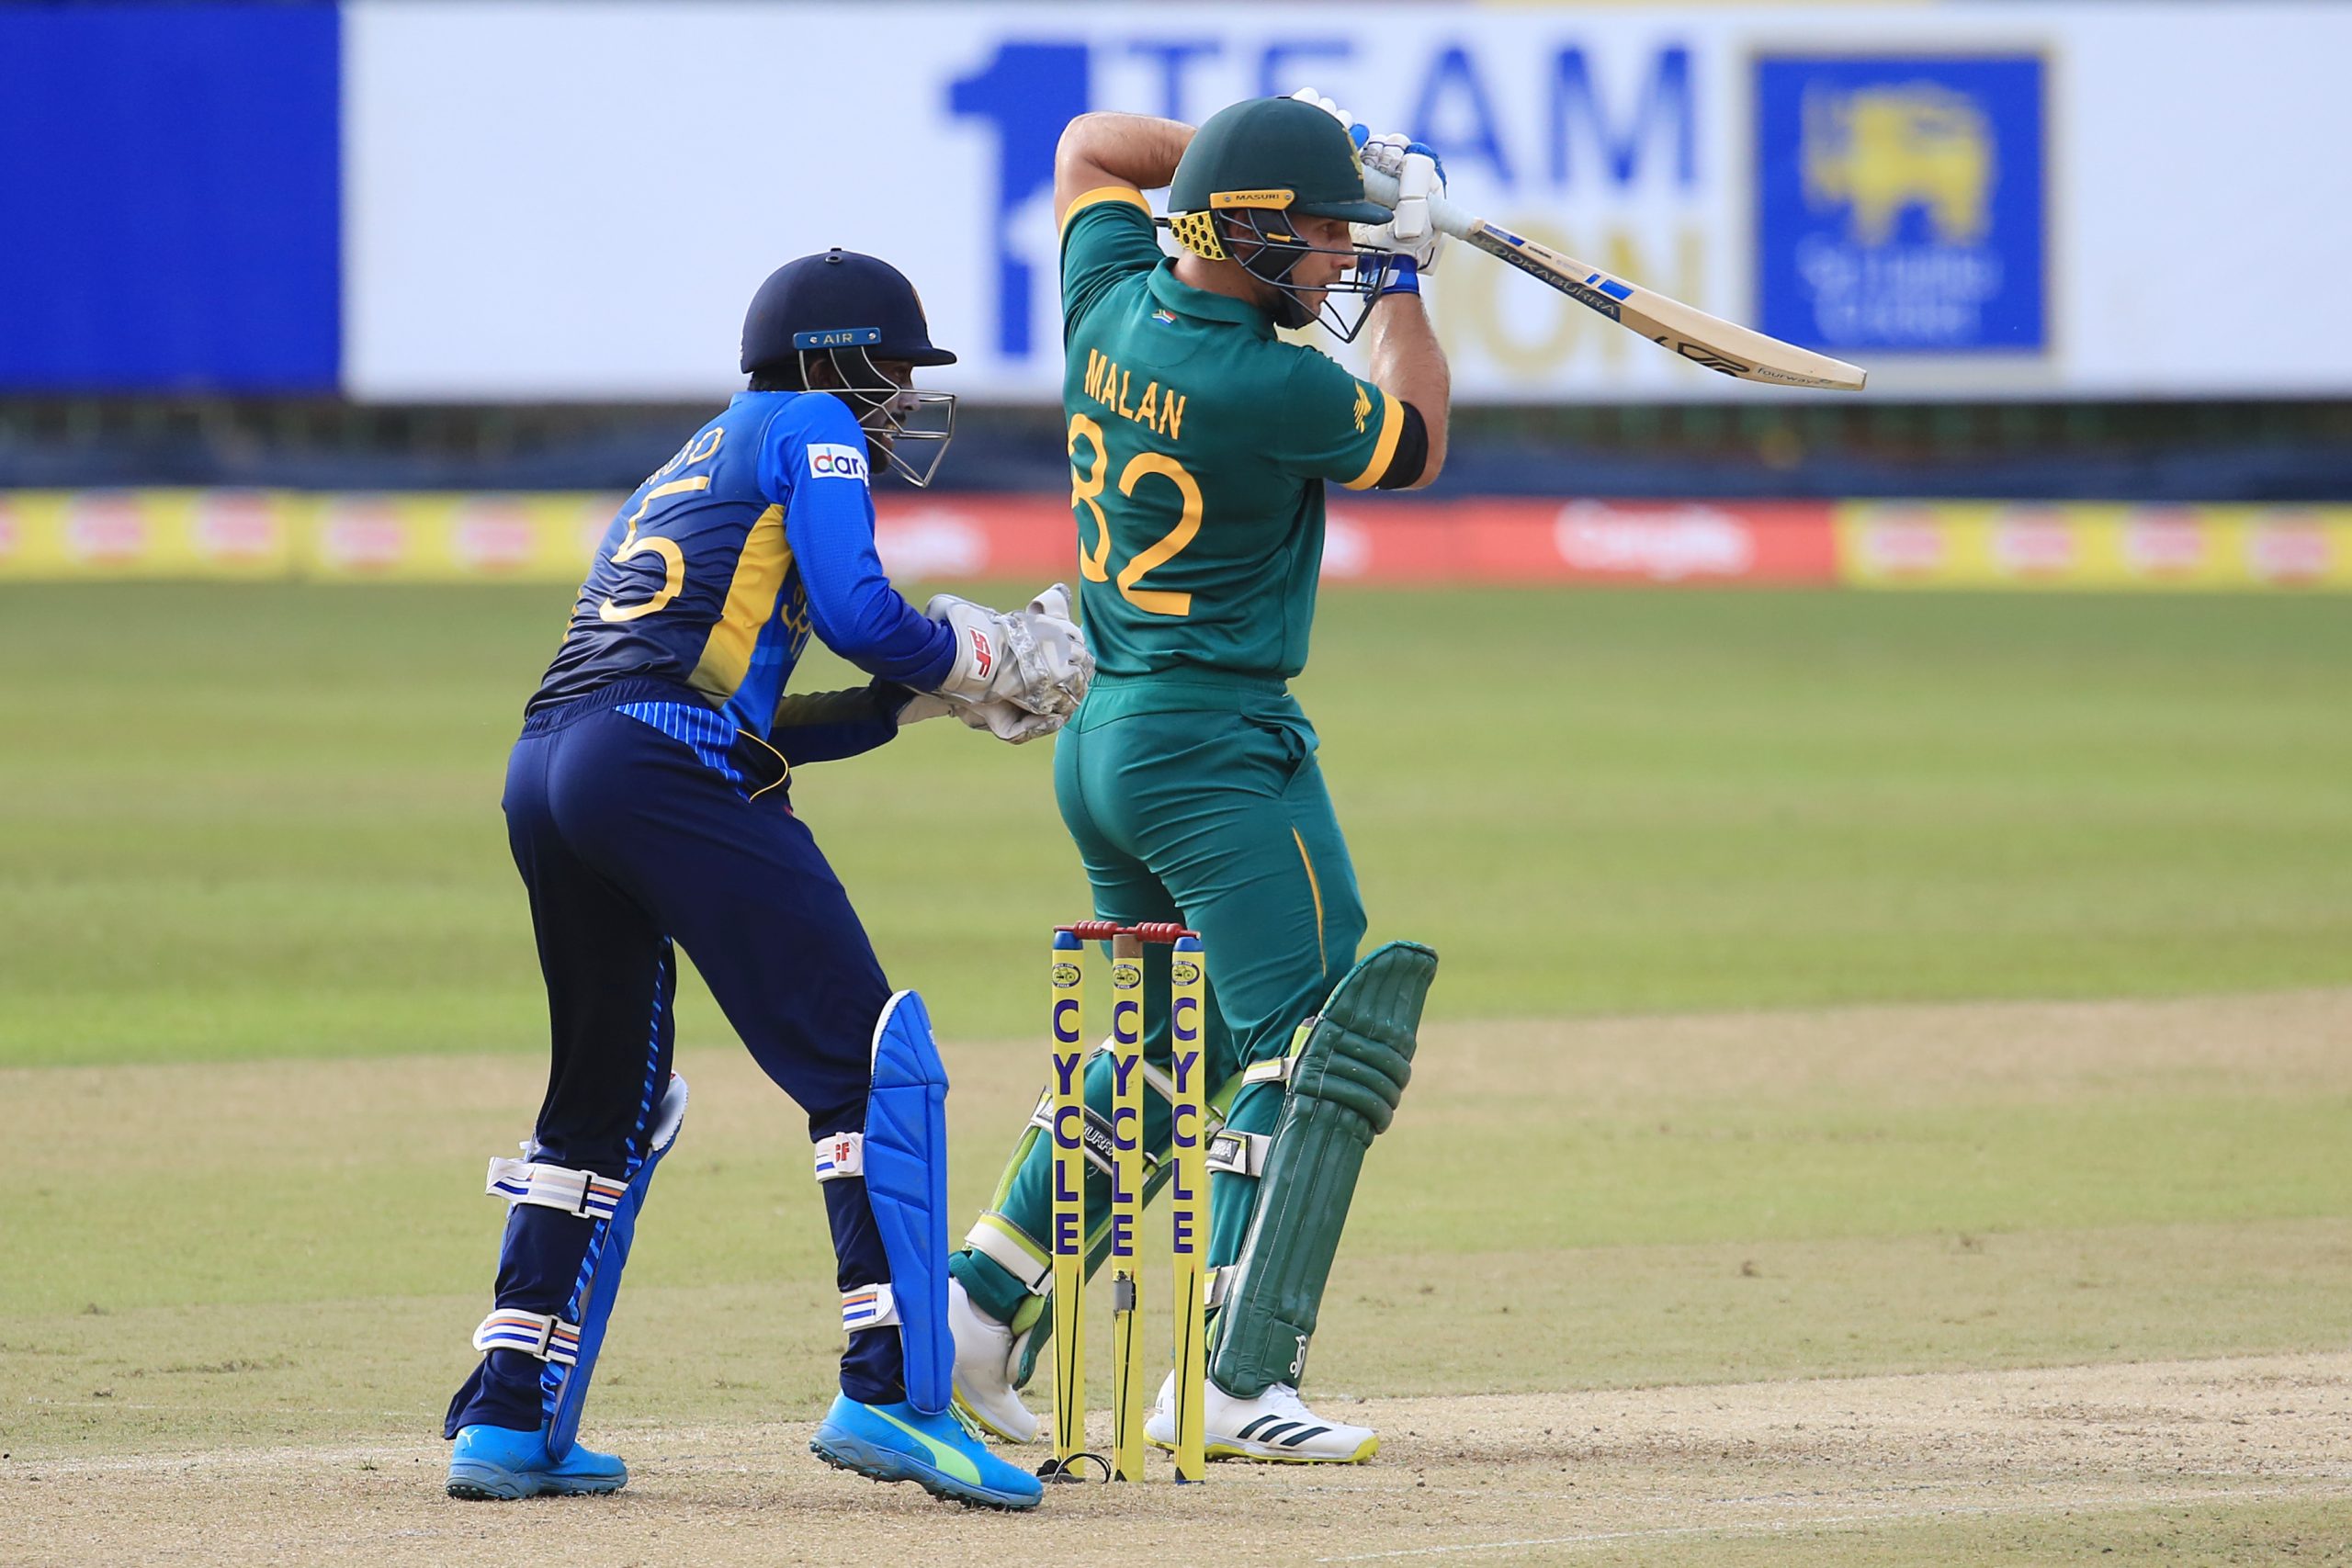 South Africa in facile win – Malan 121, Shamsi 5/49